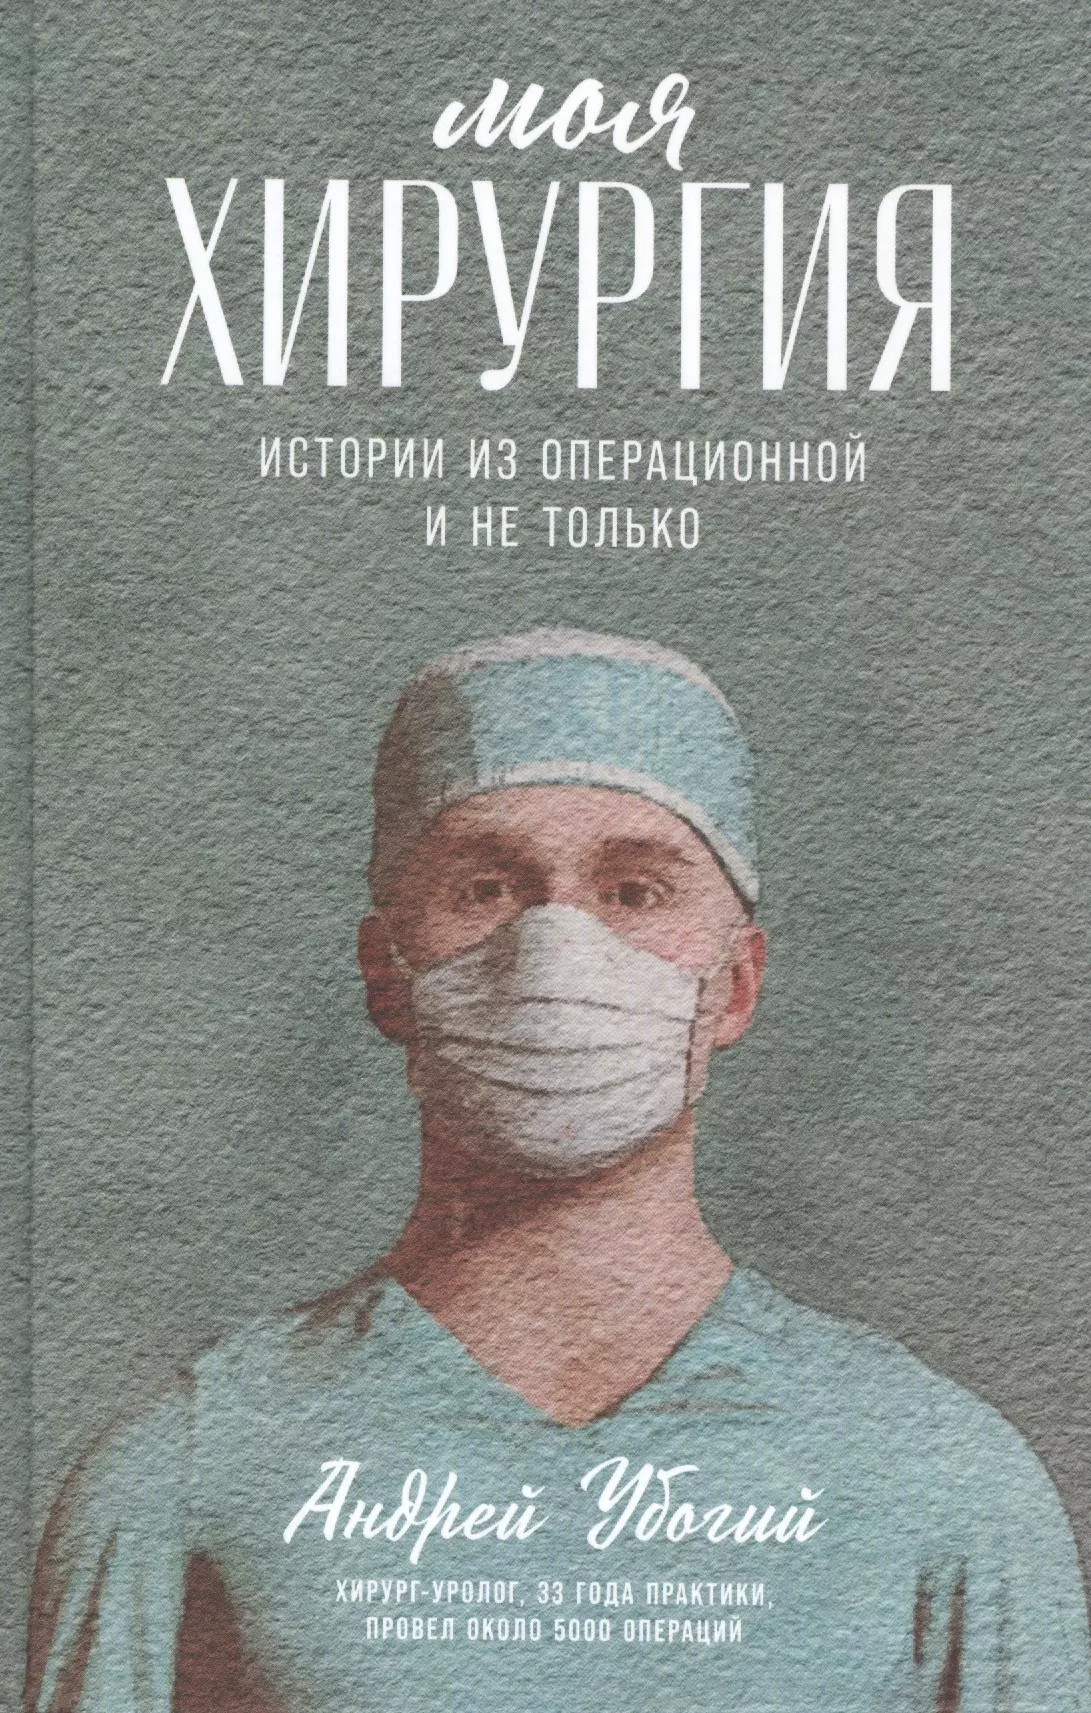 факты истории формируются не только людьми и богом Моя хирургия: Истории из операционной и не только